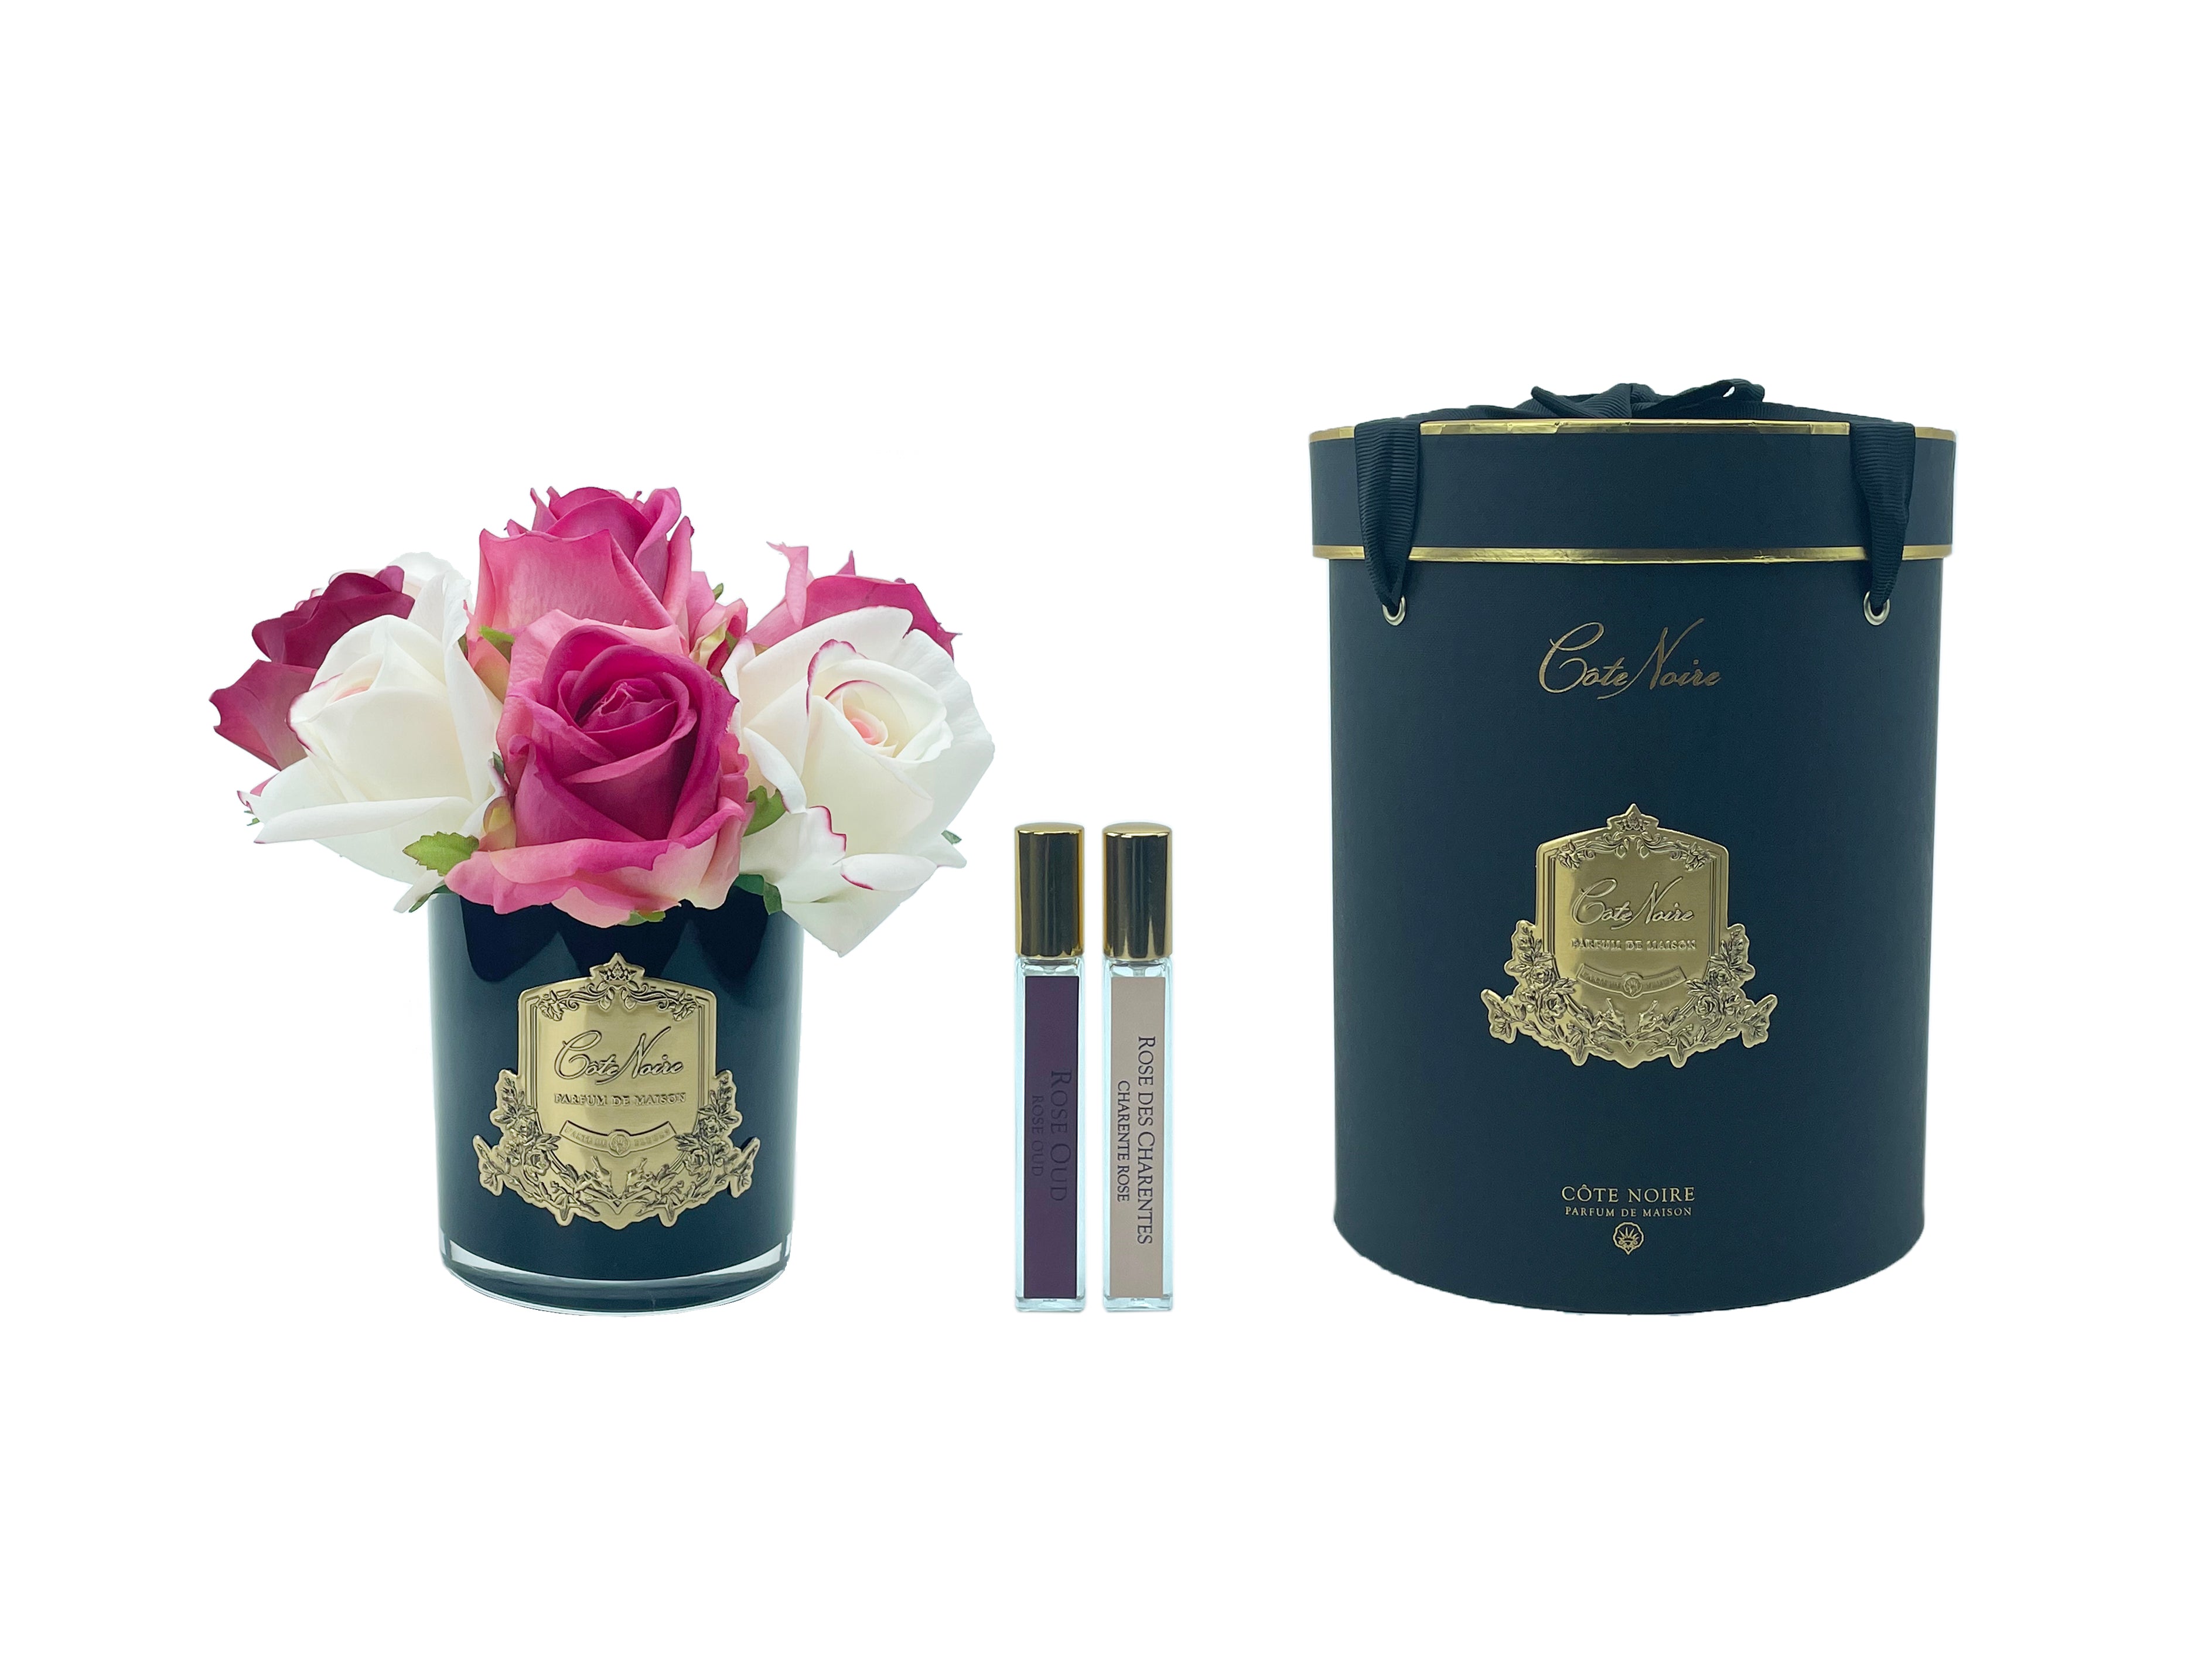 lila und weisse rosen in schwarzem glas mit goldener aufschrift, daneben zwei parfumsprays und runde geschenkbox.